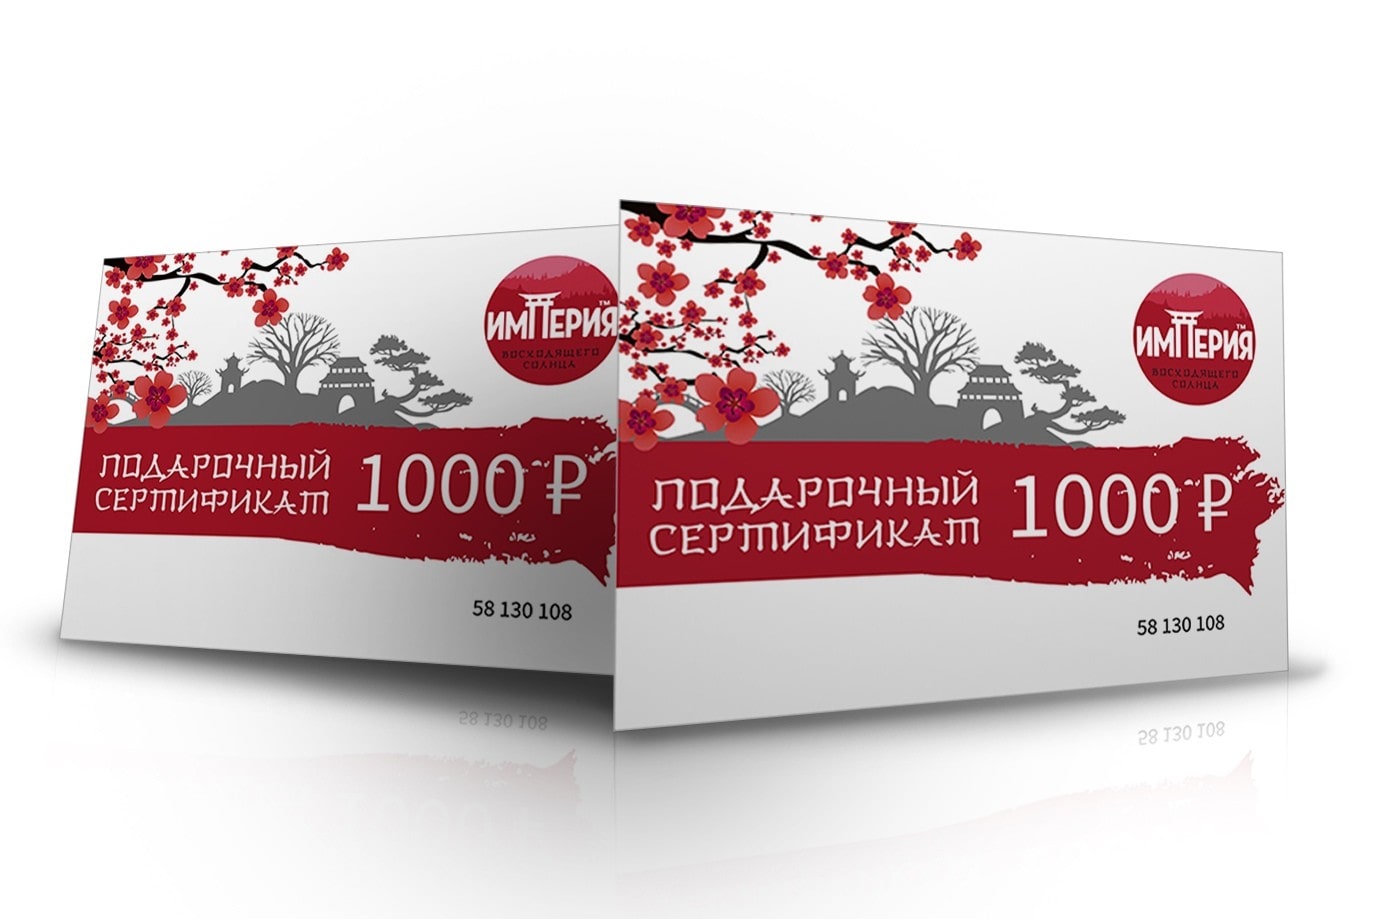 Заказать Сертификат на 1000 р. с доставкой на дом в Новосибирске, Империя суши